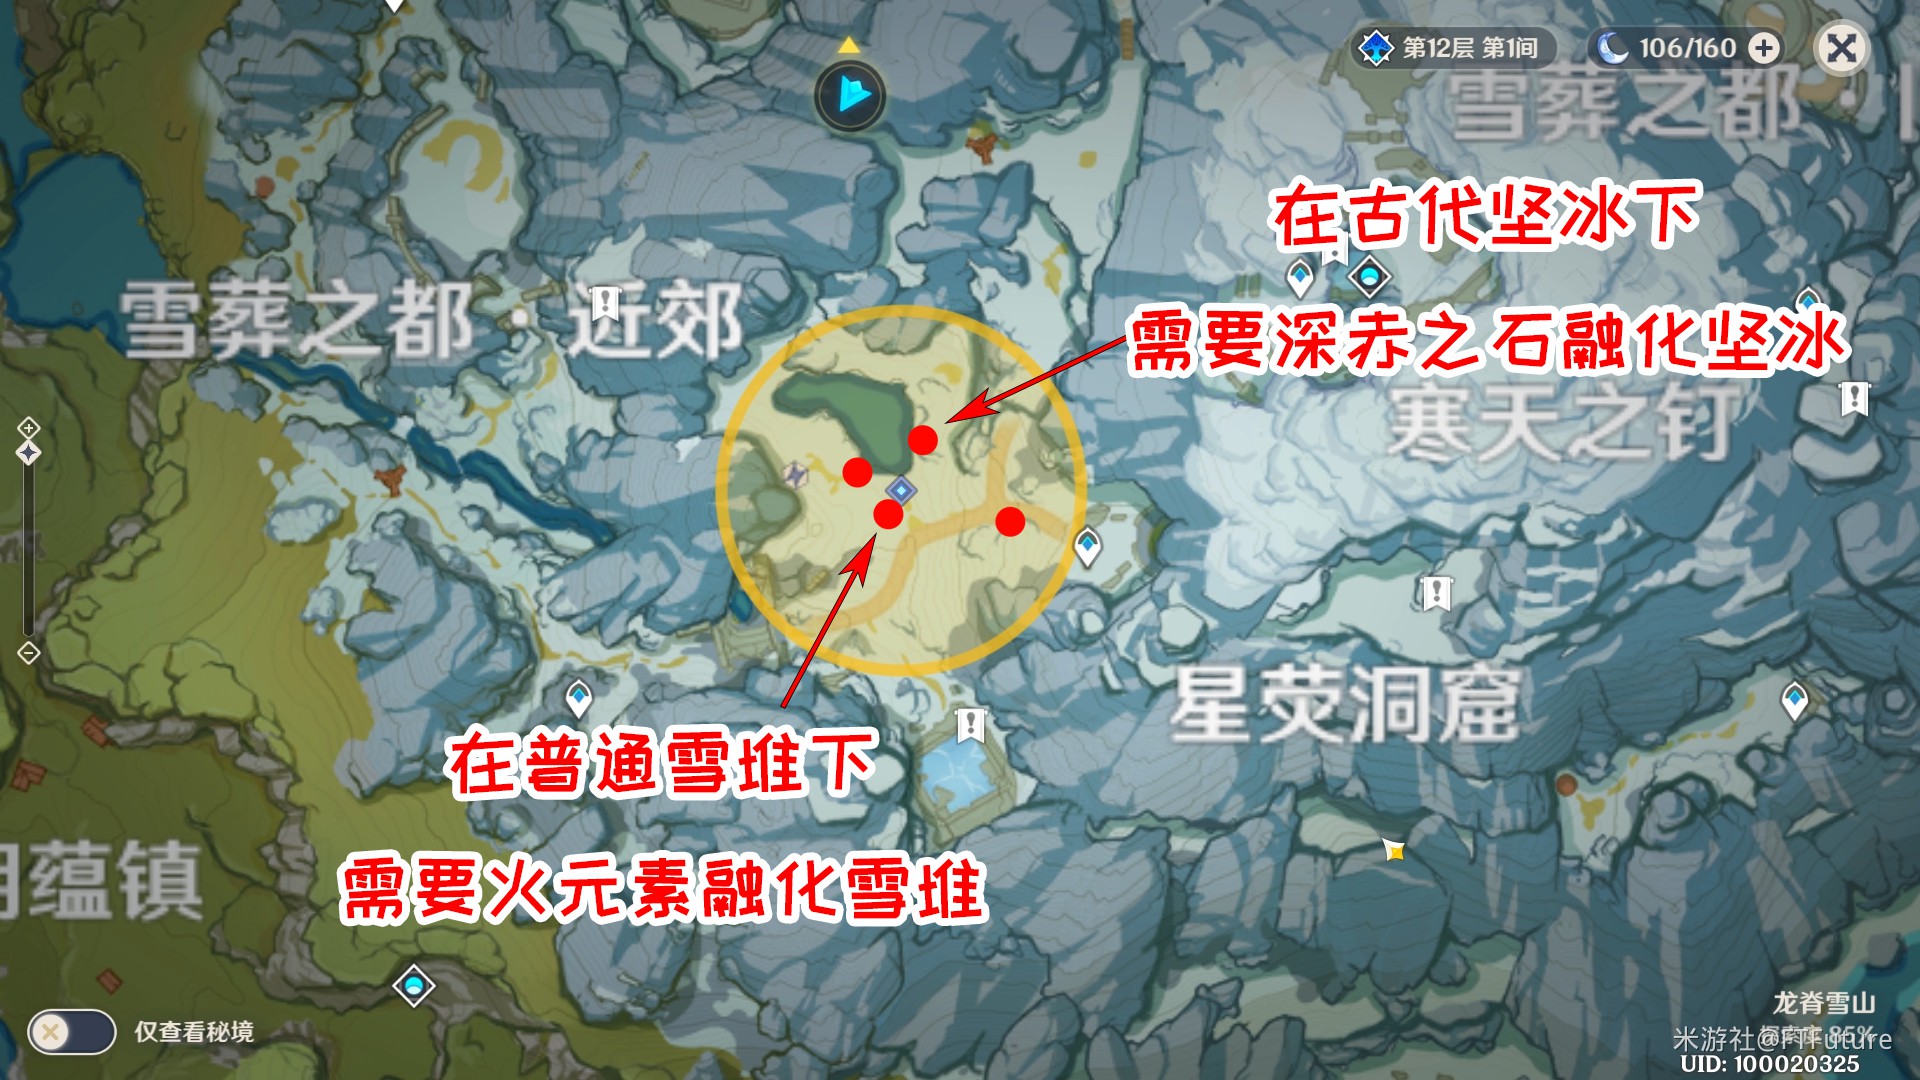 《原神》1.2版雪山勘測世界任務攻略